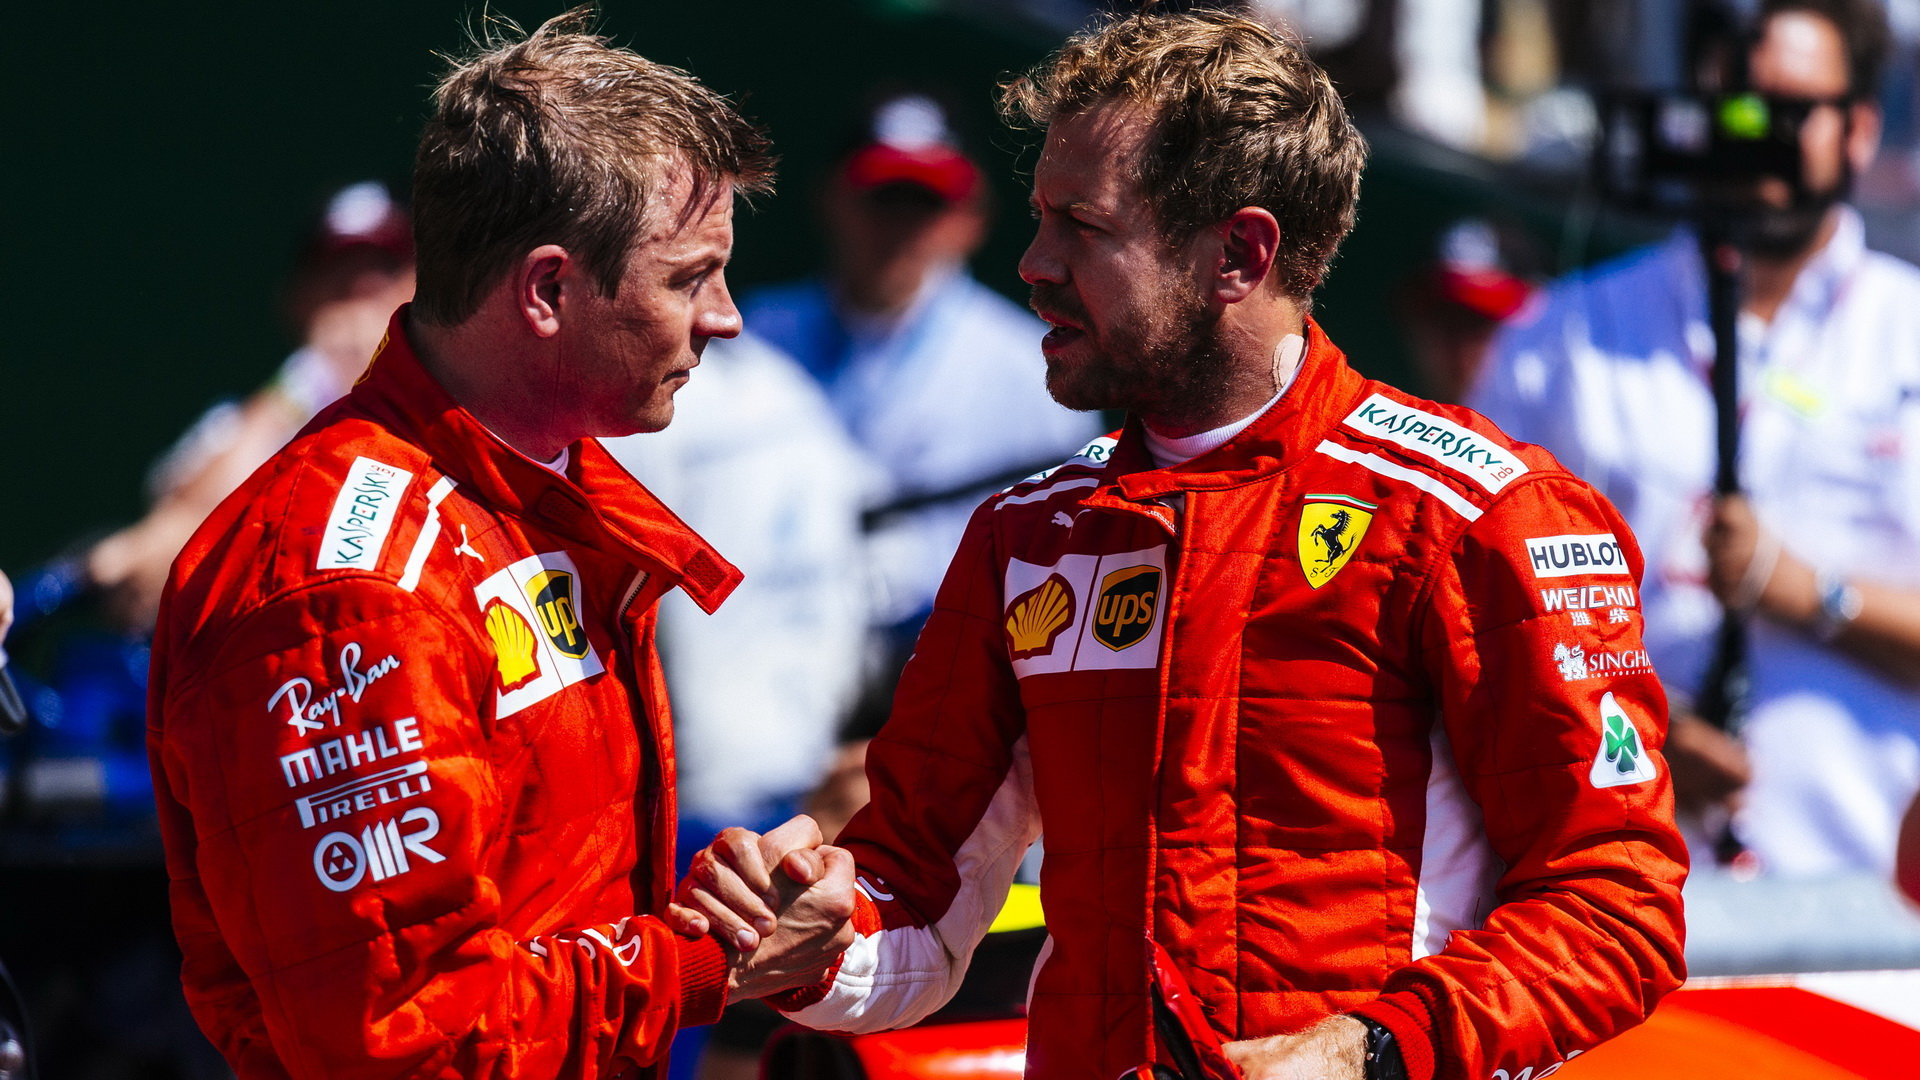 Kimi Räikkönen si se svým týmovým kolegou Sebastianem Vettelem rozumí